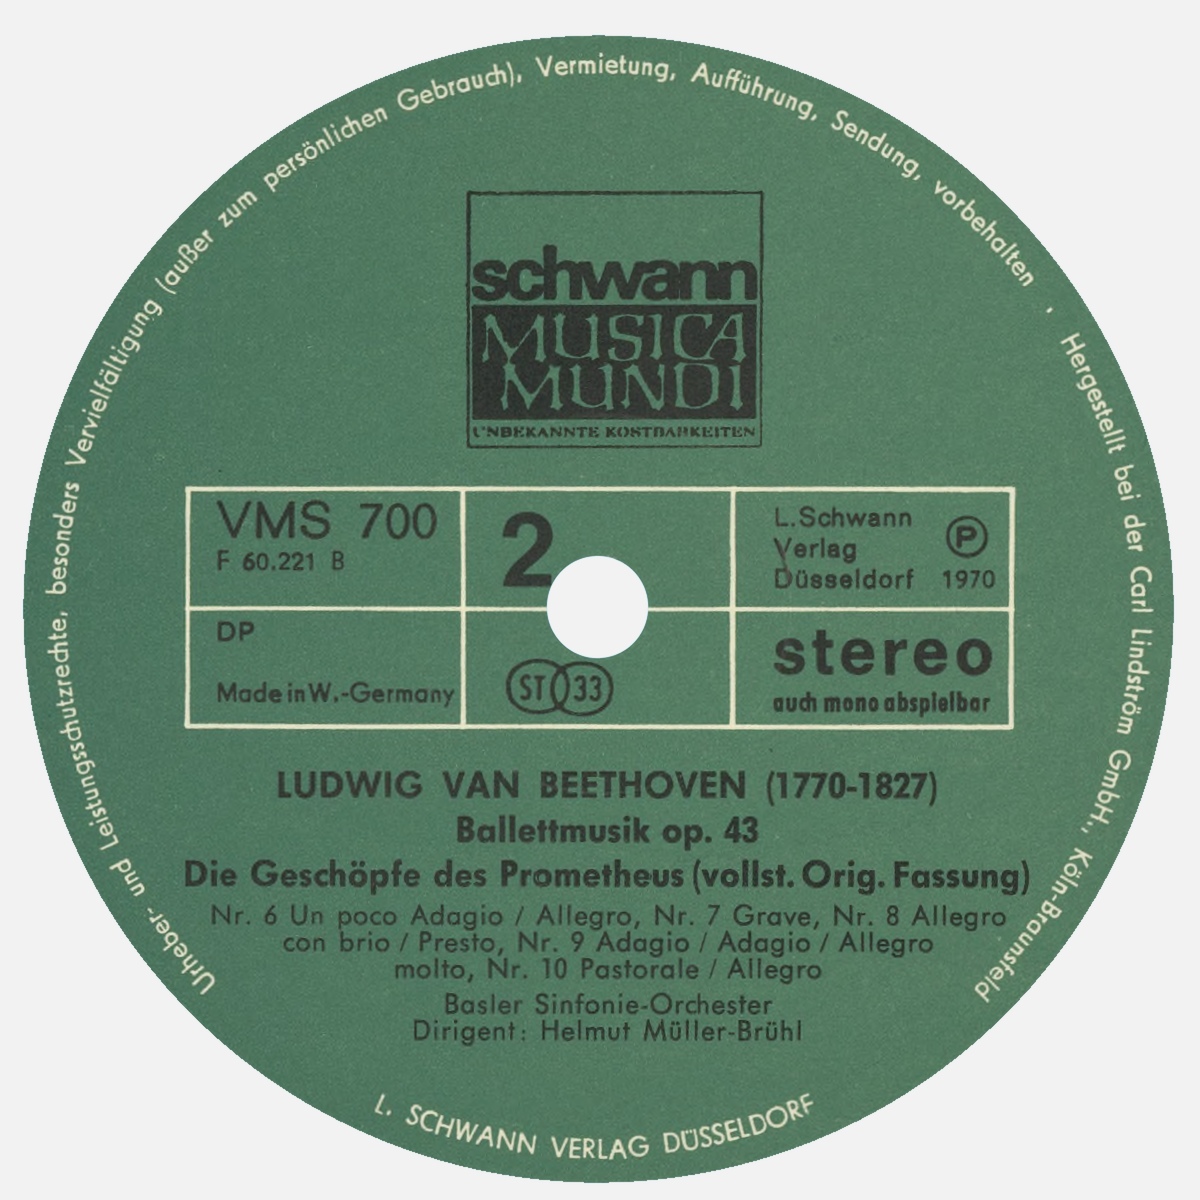 Étiquette verso du premier disque de l'album Schwann Musica Mundi VMS 700/701, cliquer pour un agrandissement de la photo